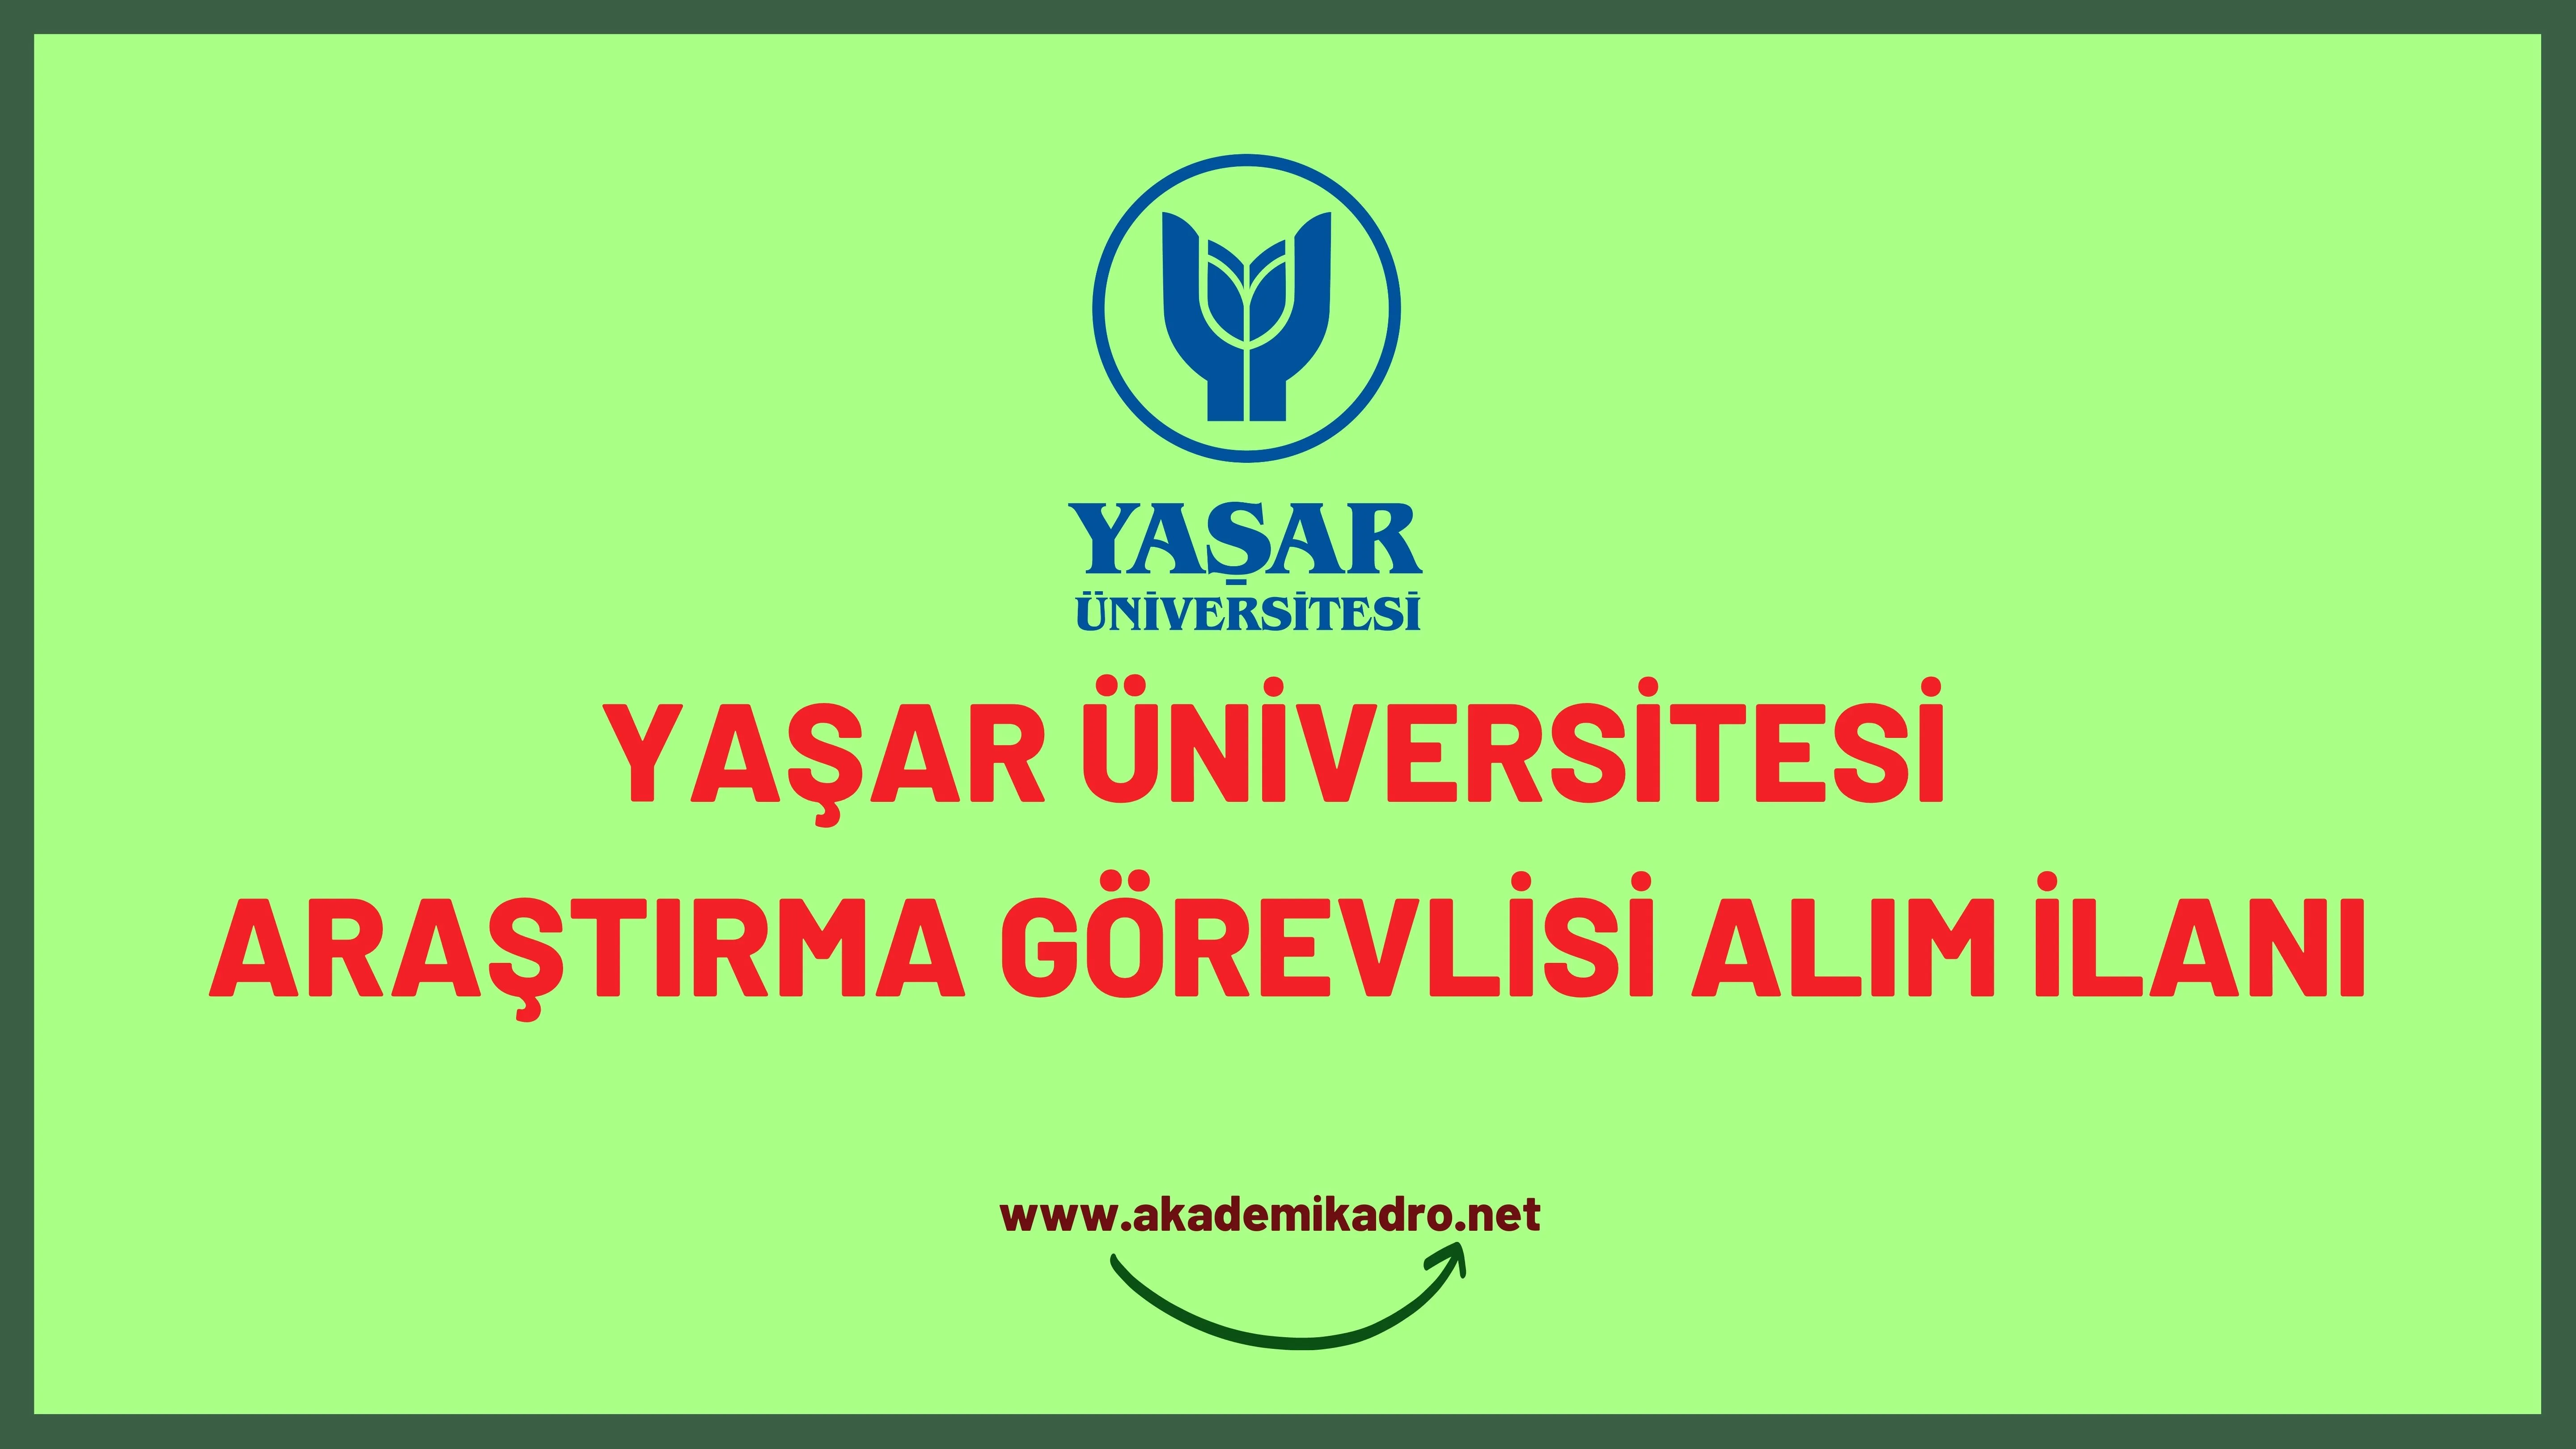 Yaşar Üniversitesi 2 araştırma görevlisi alacaktır. Son başvuru tarihi 02 Şubat 2023 